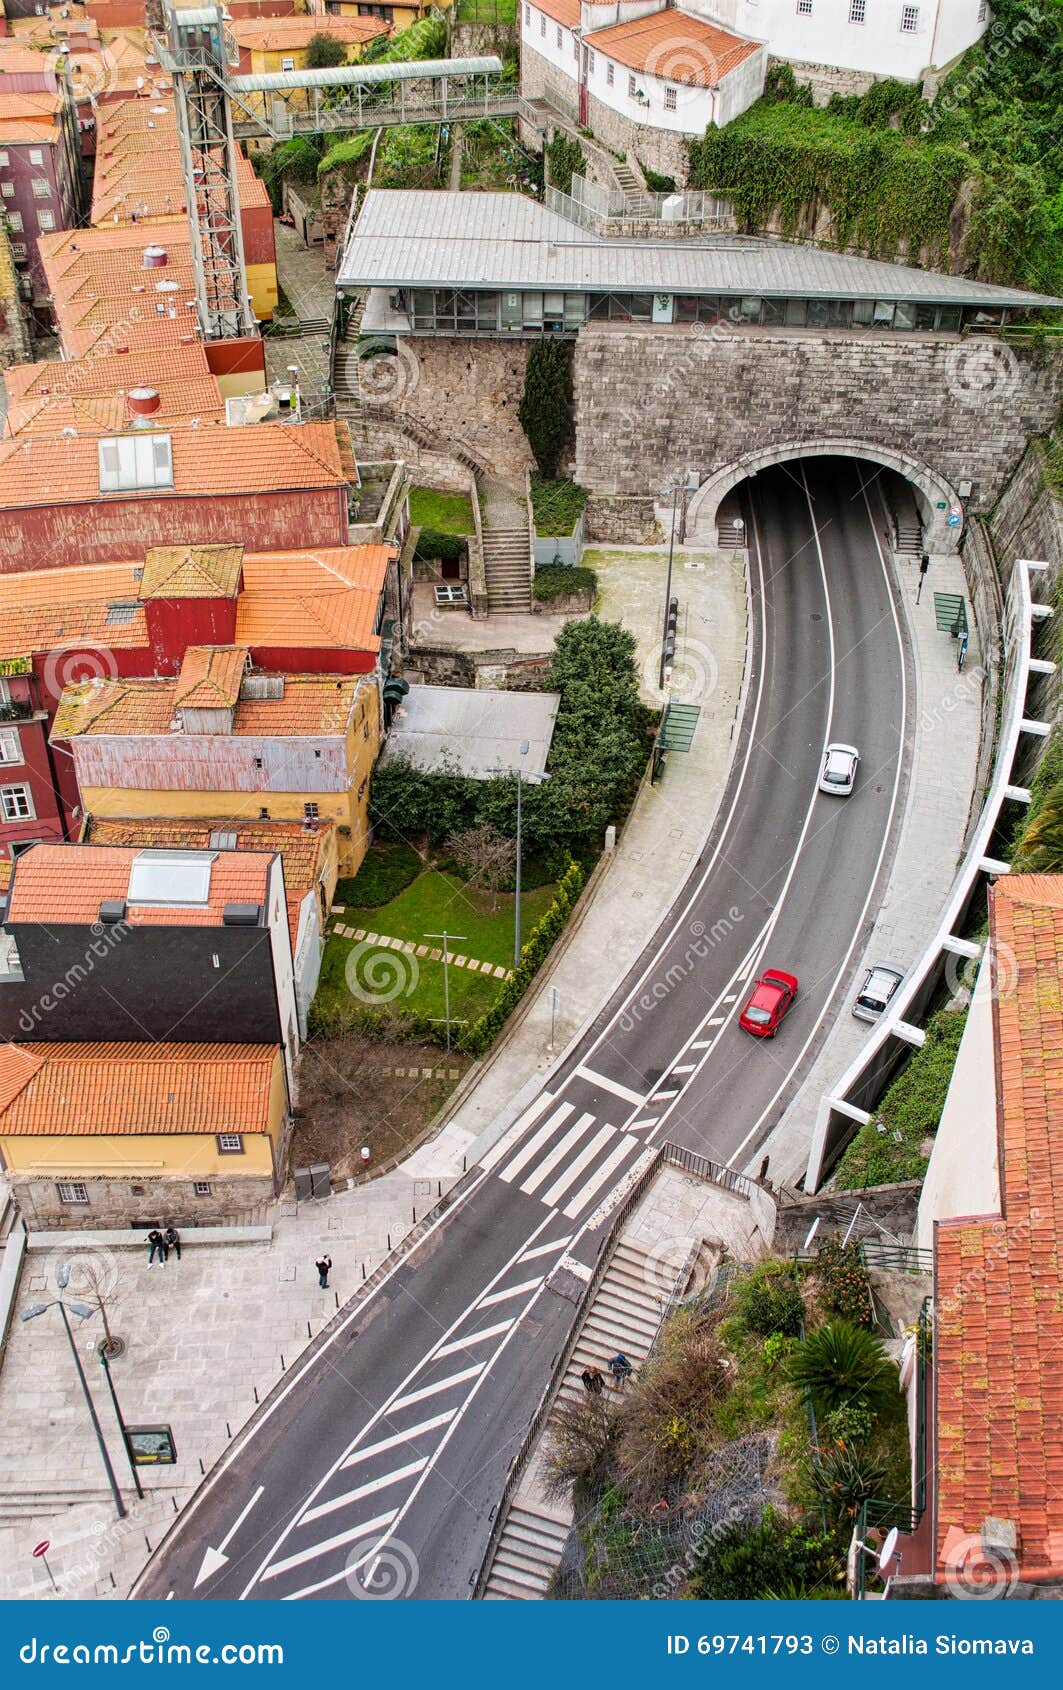 cityscape of modern porto. portugal